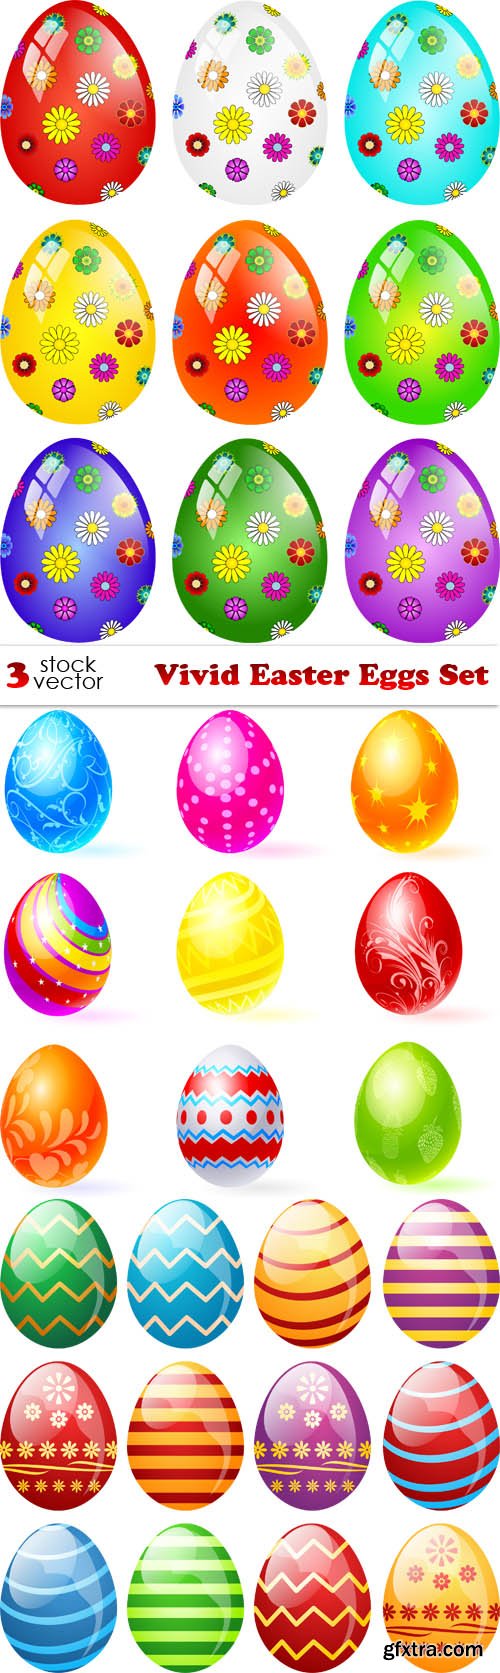 Vectors - Vivid Easter Eggs Set